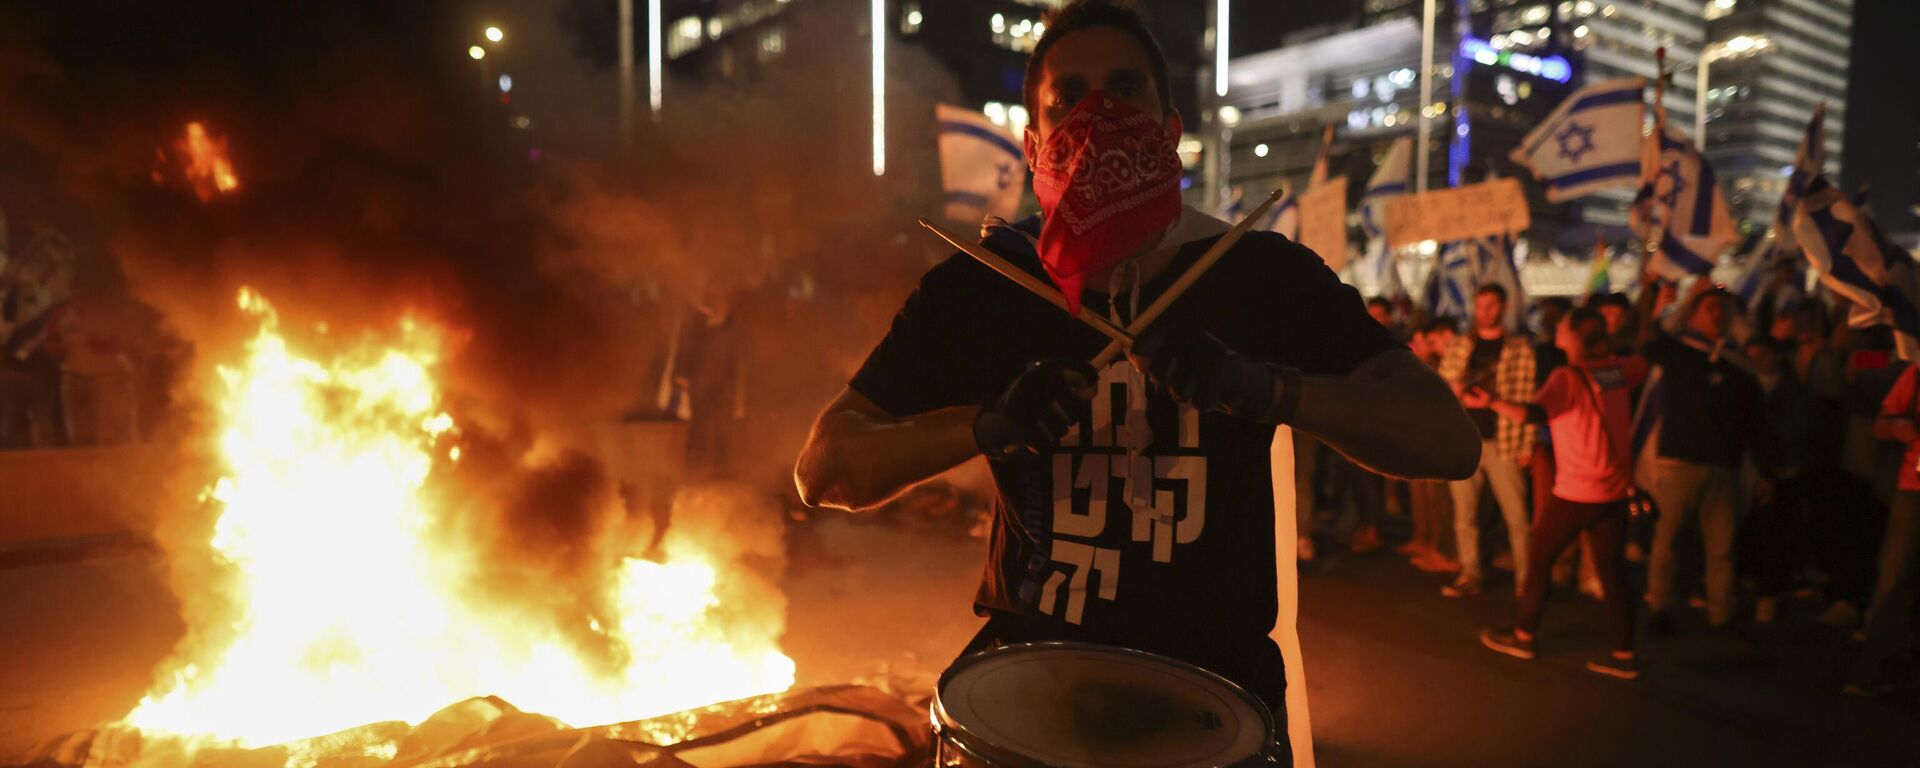 Митингующие против реформы судебной системы Израиля разводят костры и блокируют шоссе во время акции протеста в Тель-Авиве, Израиль, 26 марта 2003 года - Sputnik Mundo, 1920, 27.03.2023